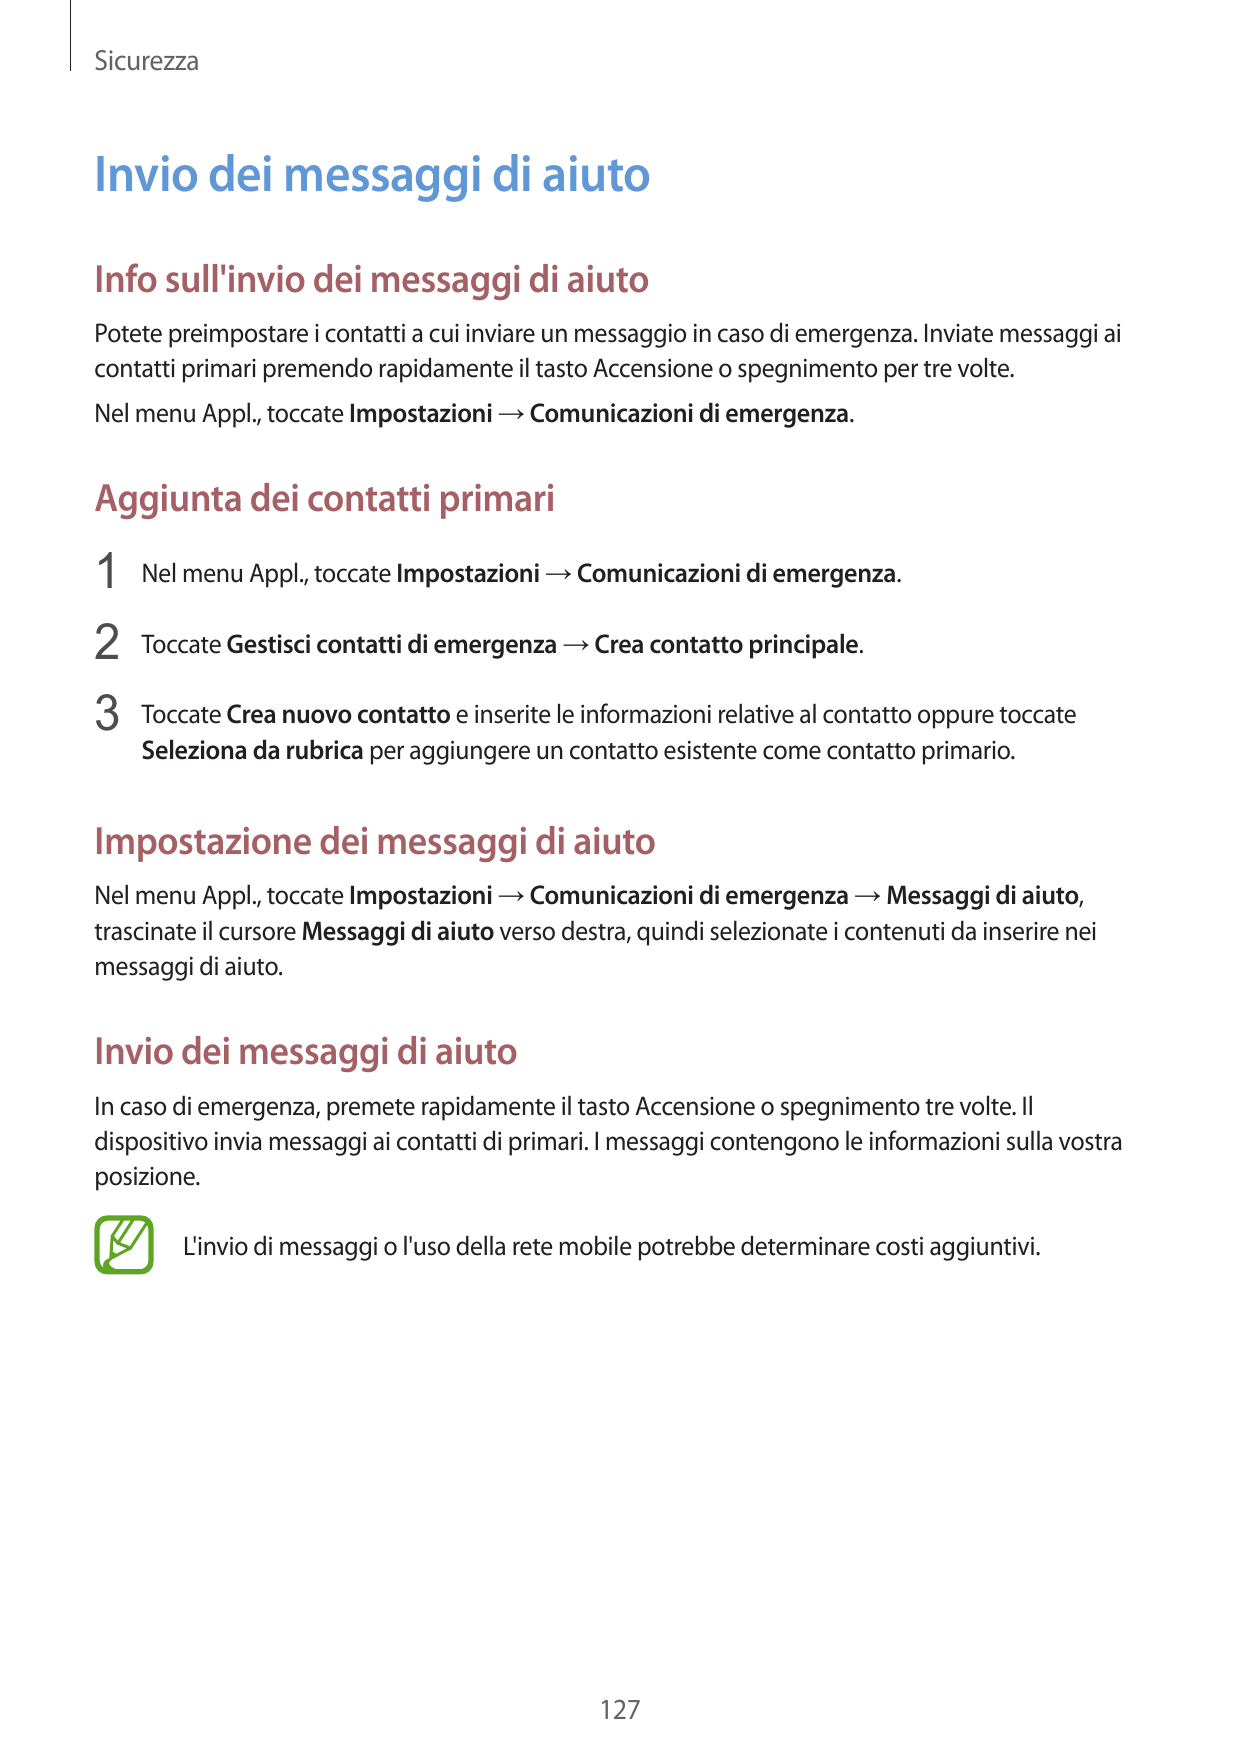 SicurezzaInvio dei messaggi di aiutoInfo sull'invio dei messaggi di aiutoPotete preimpostare i contatti a cui inviare un messagg